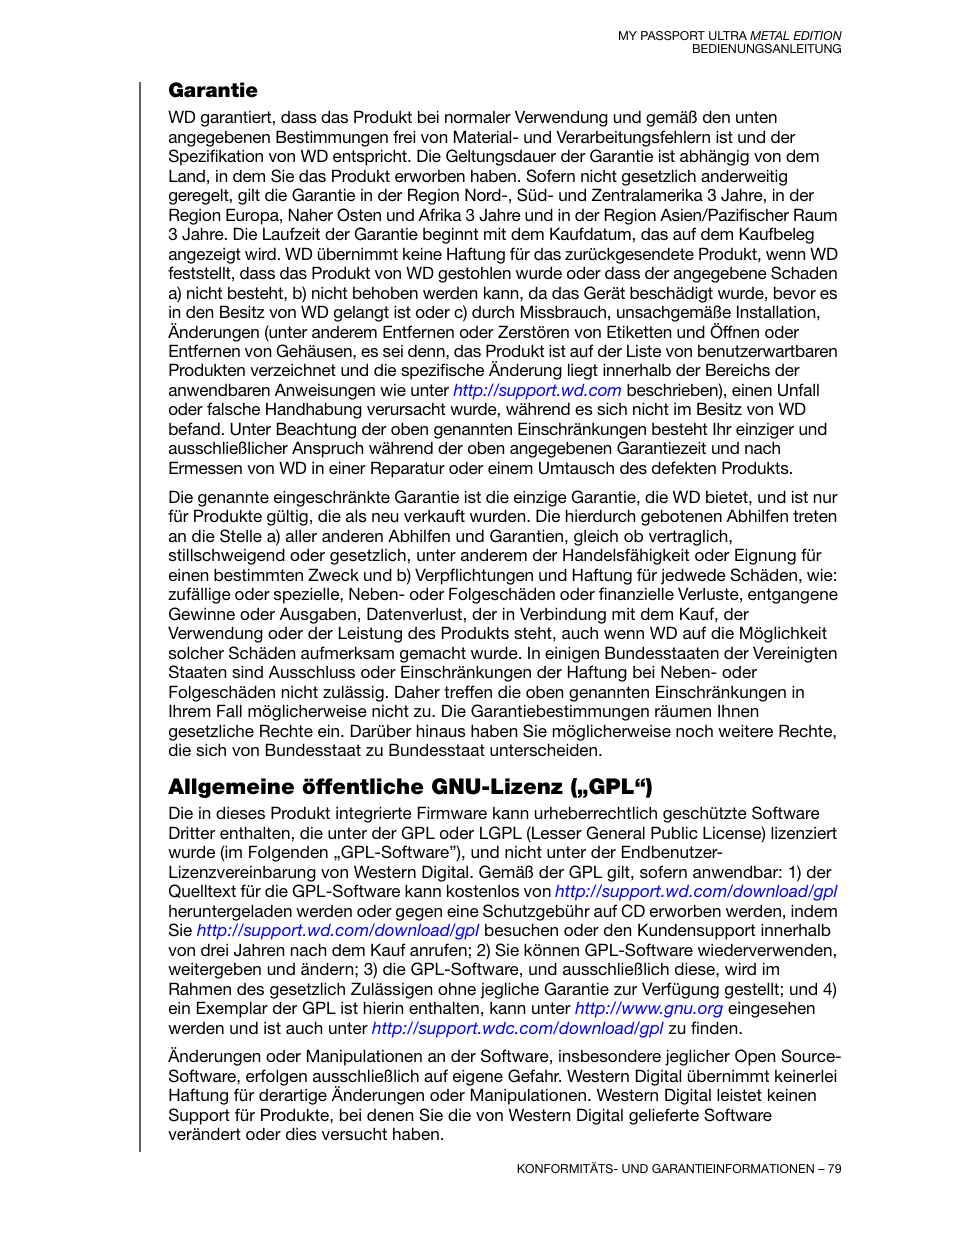 Garantie, Allgemeine öffentliche gnu-lizenz („gpl“) | Western Digital My Passport Ultra Metal User Manual Benutzerhandbuch | Seite 84 / 89